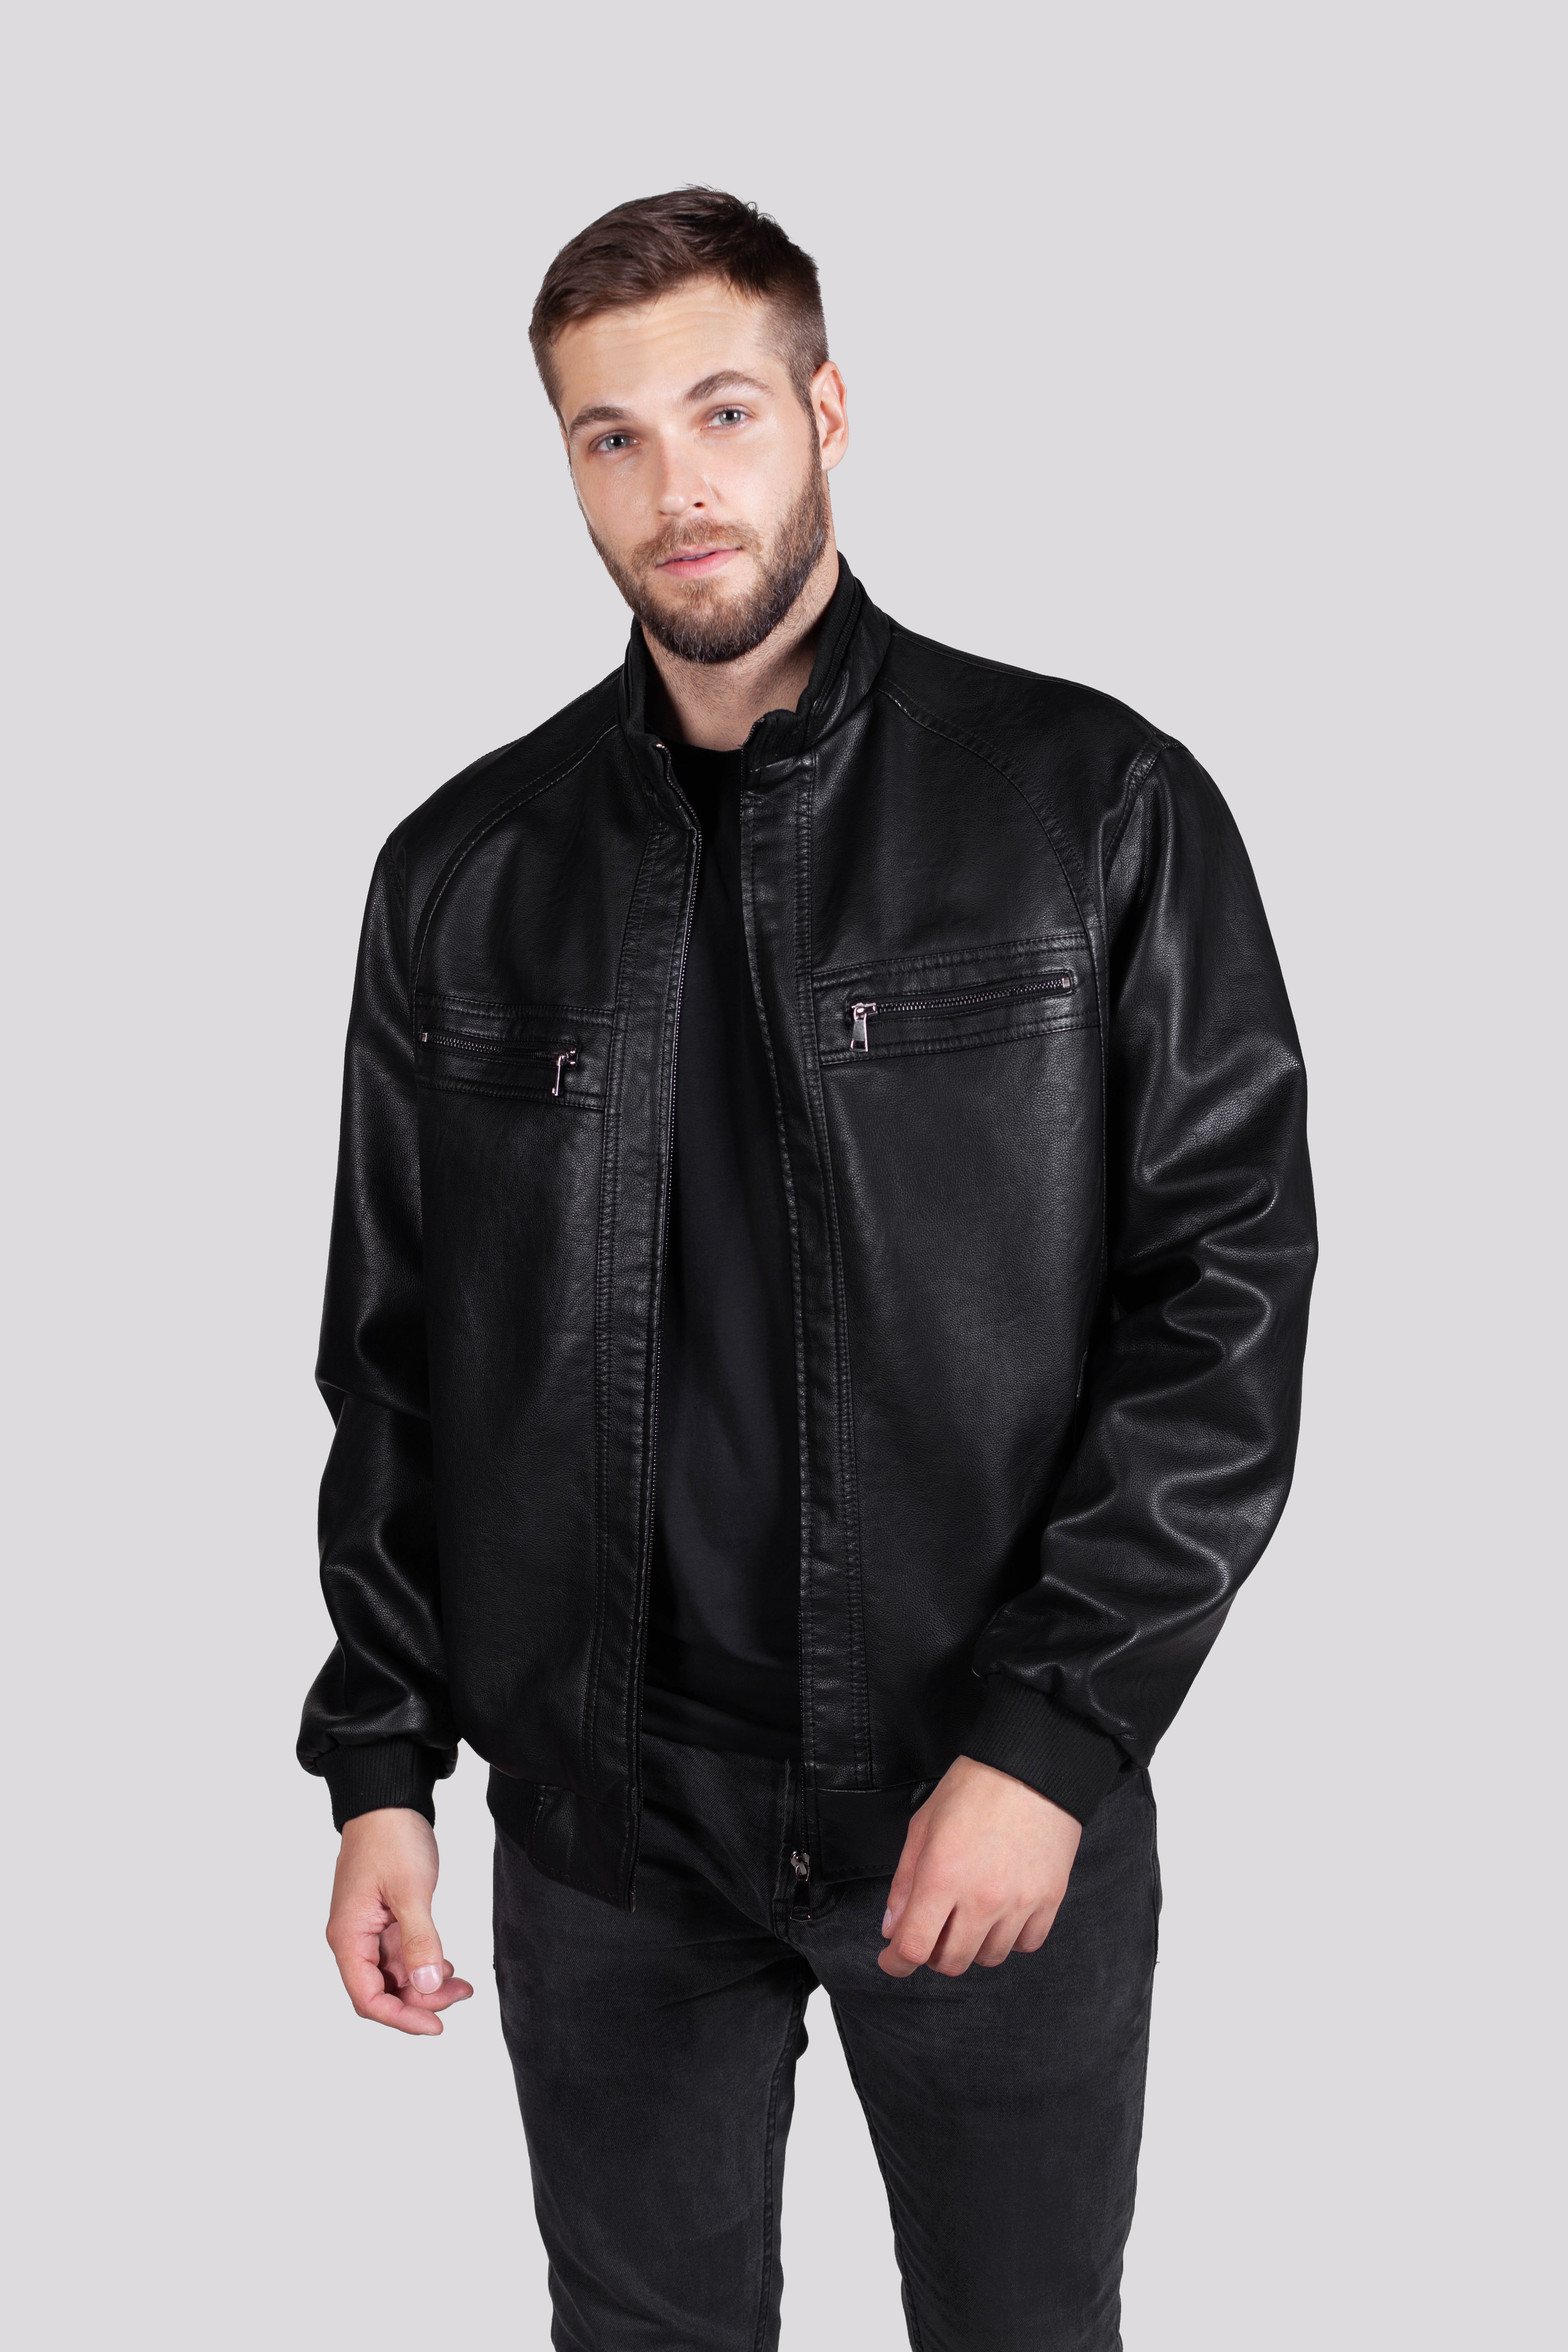 Кожаная куртка мужская RATSKA 809 черная 50 RU